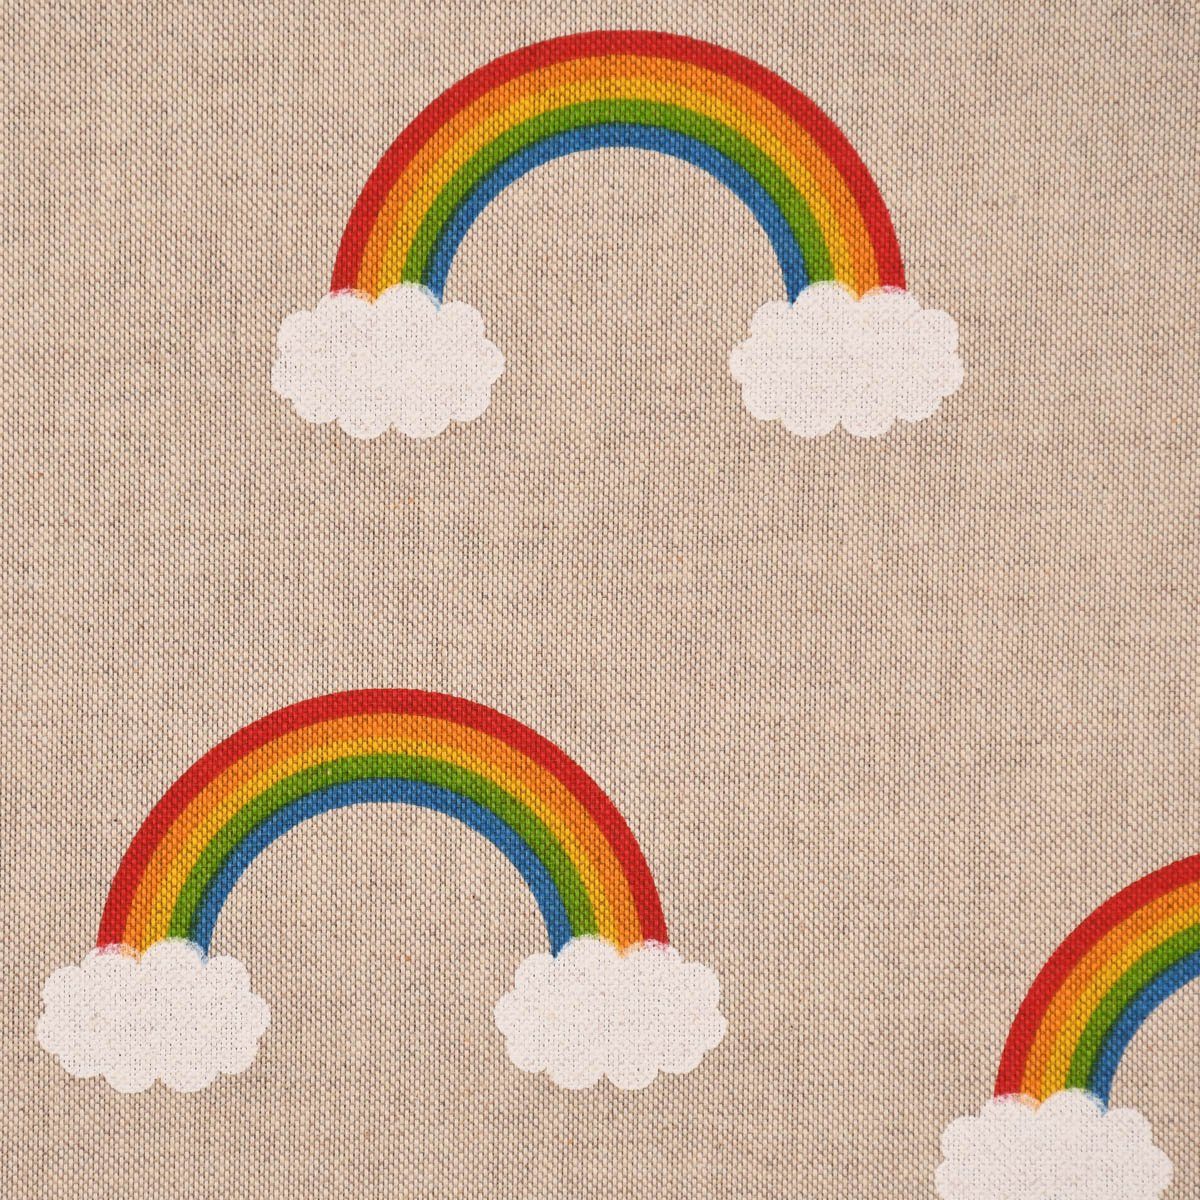 LEBEN. handmade Regenbogen Rainbow Zugluftstopper Wolken LEBEN. the Zugluftstopper Over natur, SCHÖNER SCHÖNER